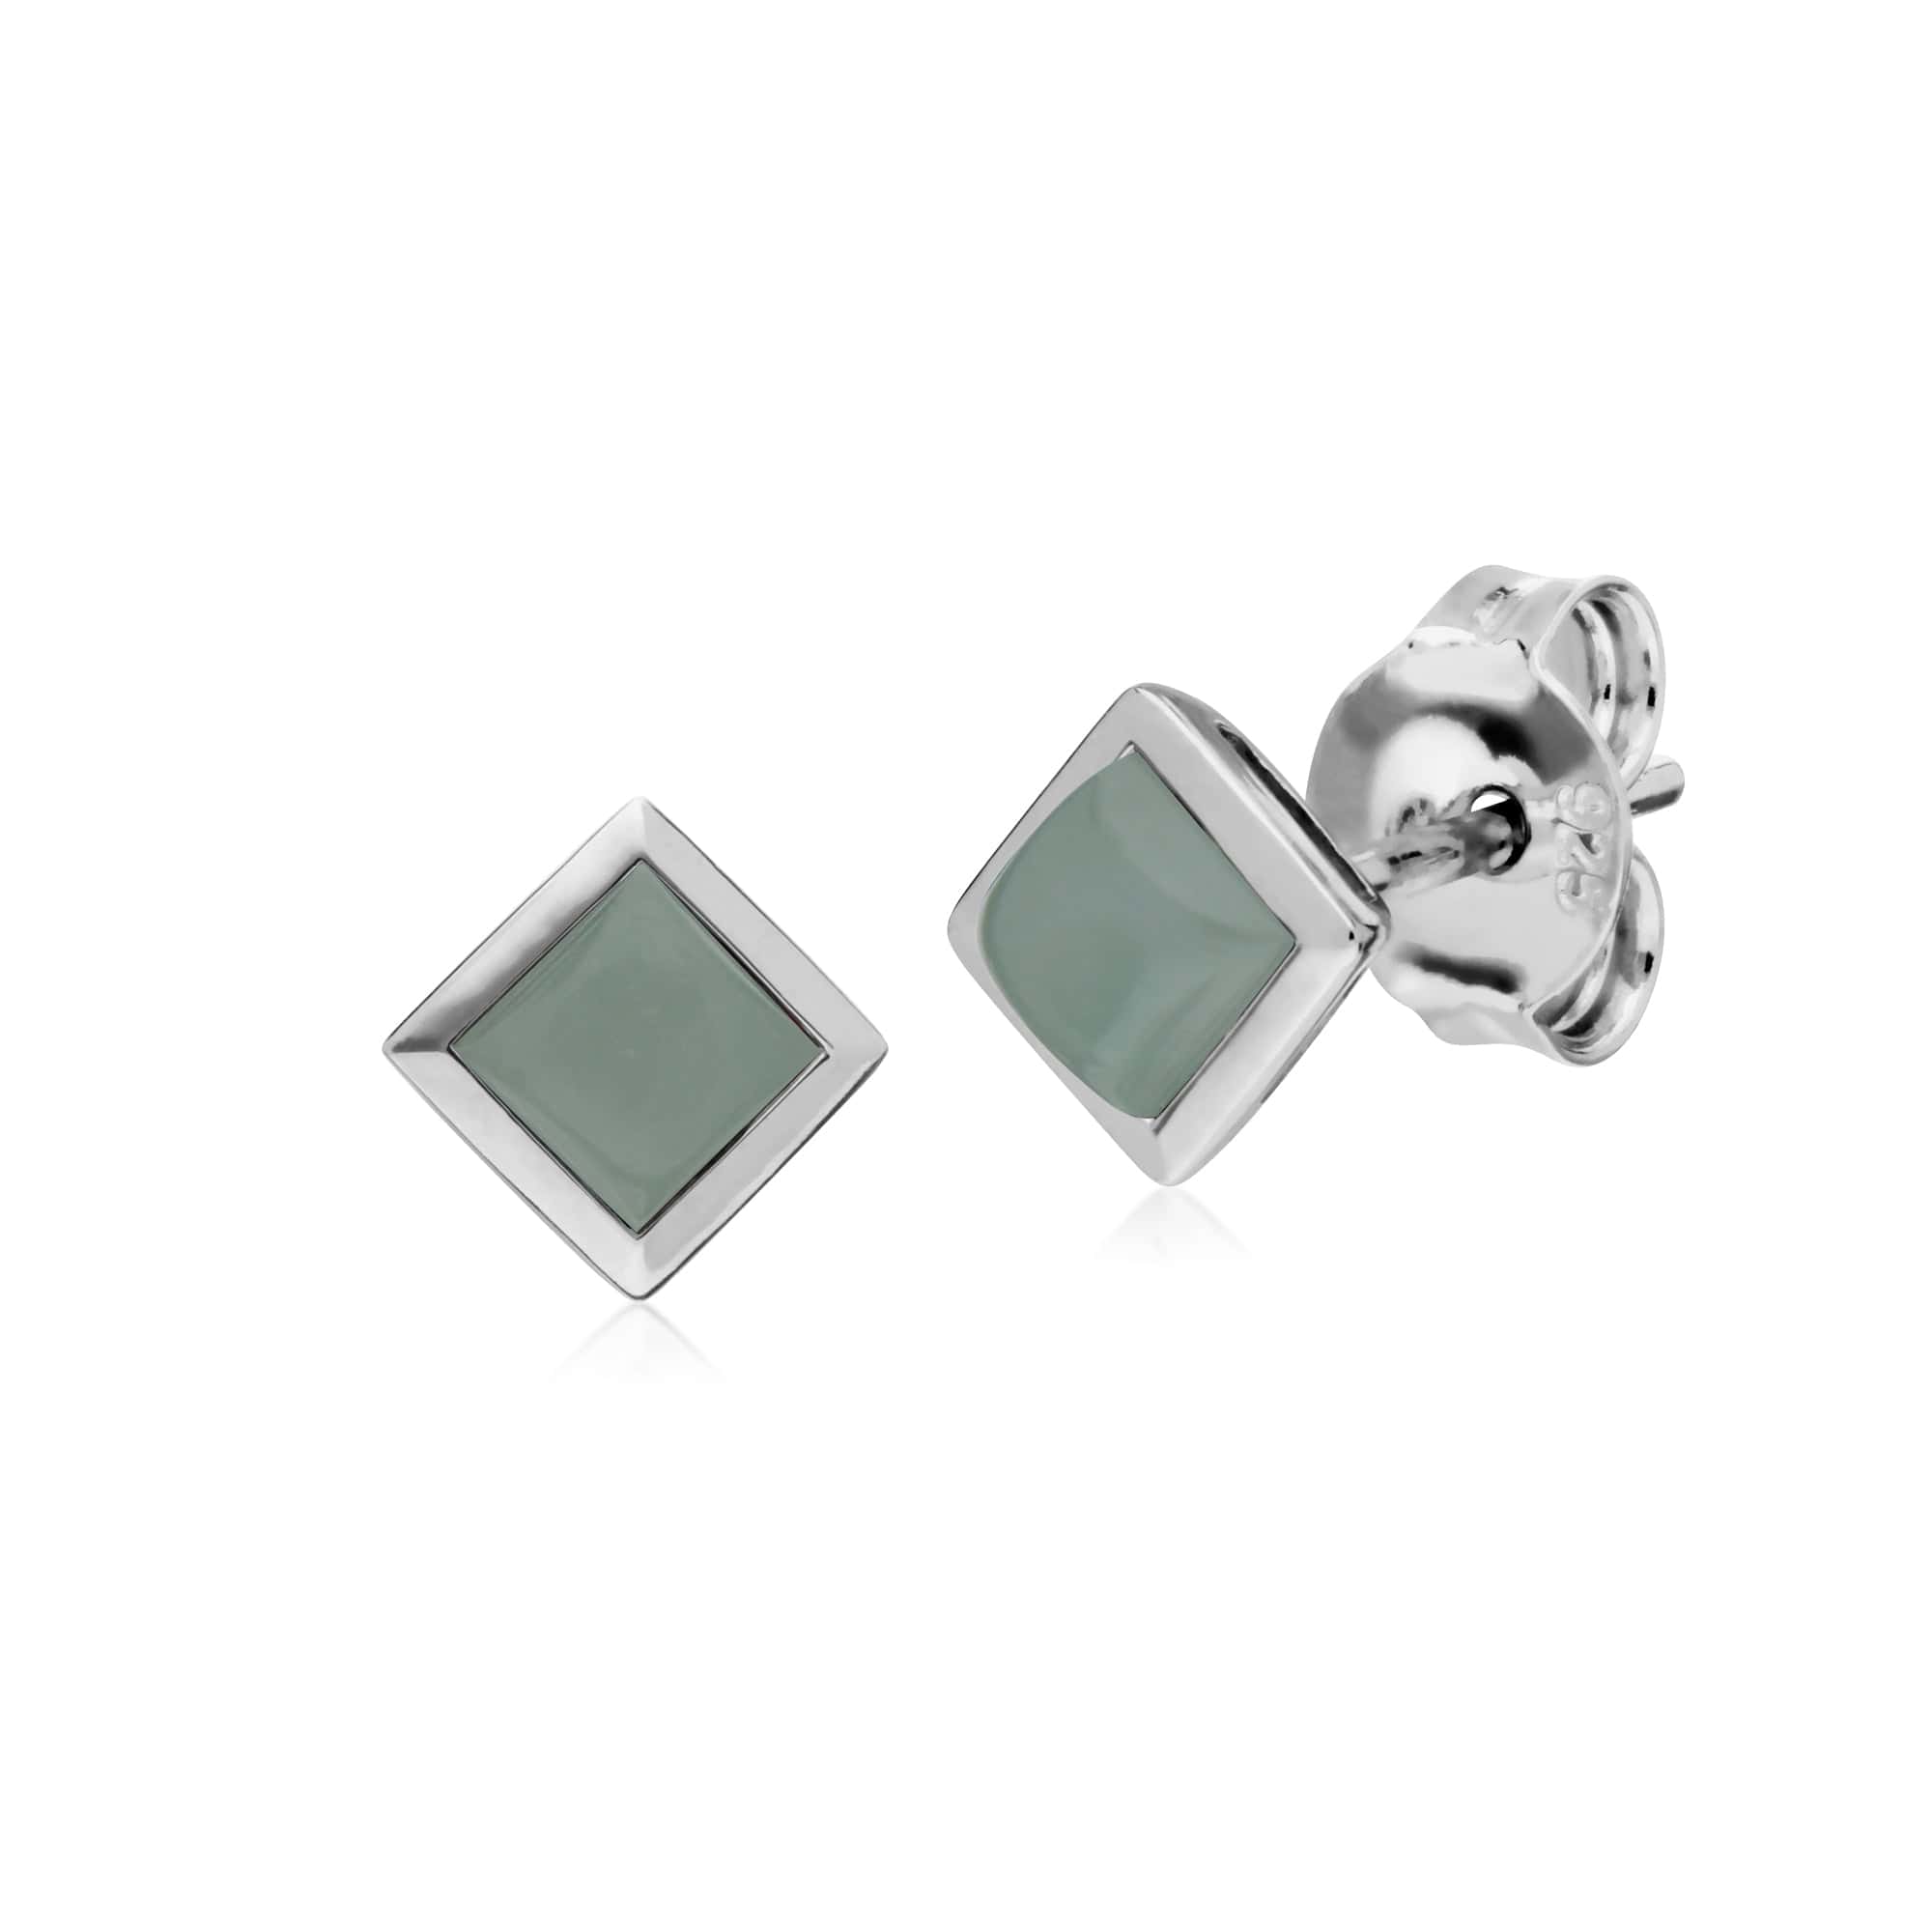 Classic Square Jade Bezel Stud Earrings in 925 Sterling Silver - Gemondo